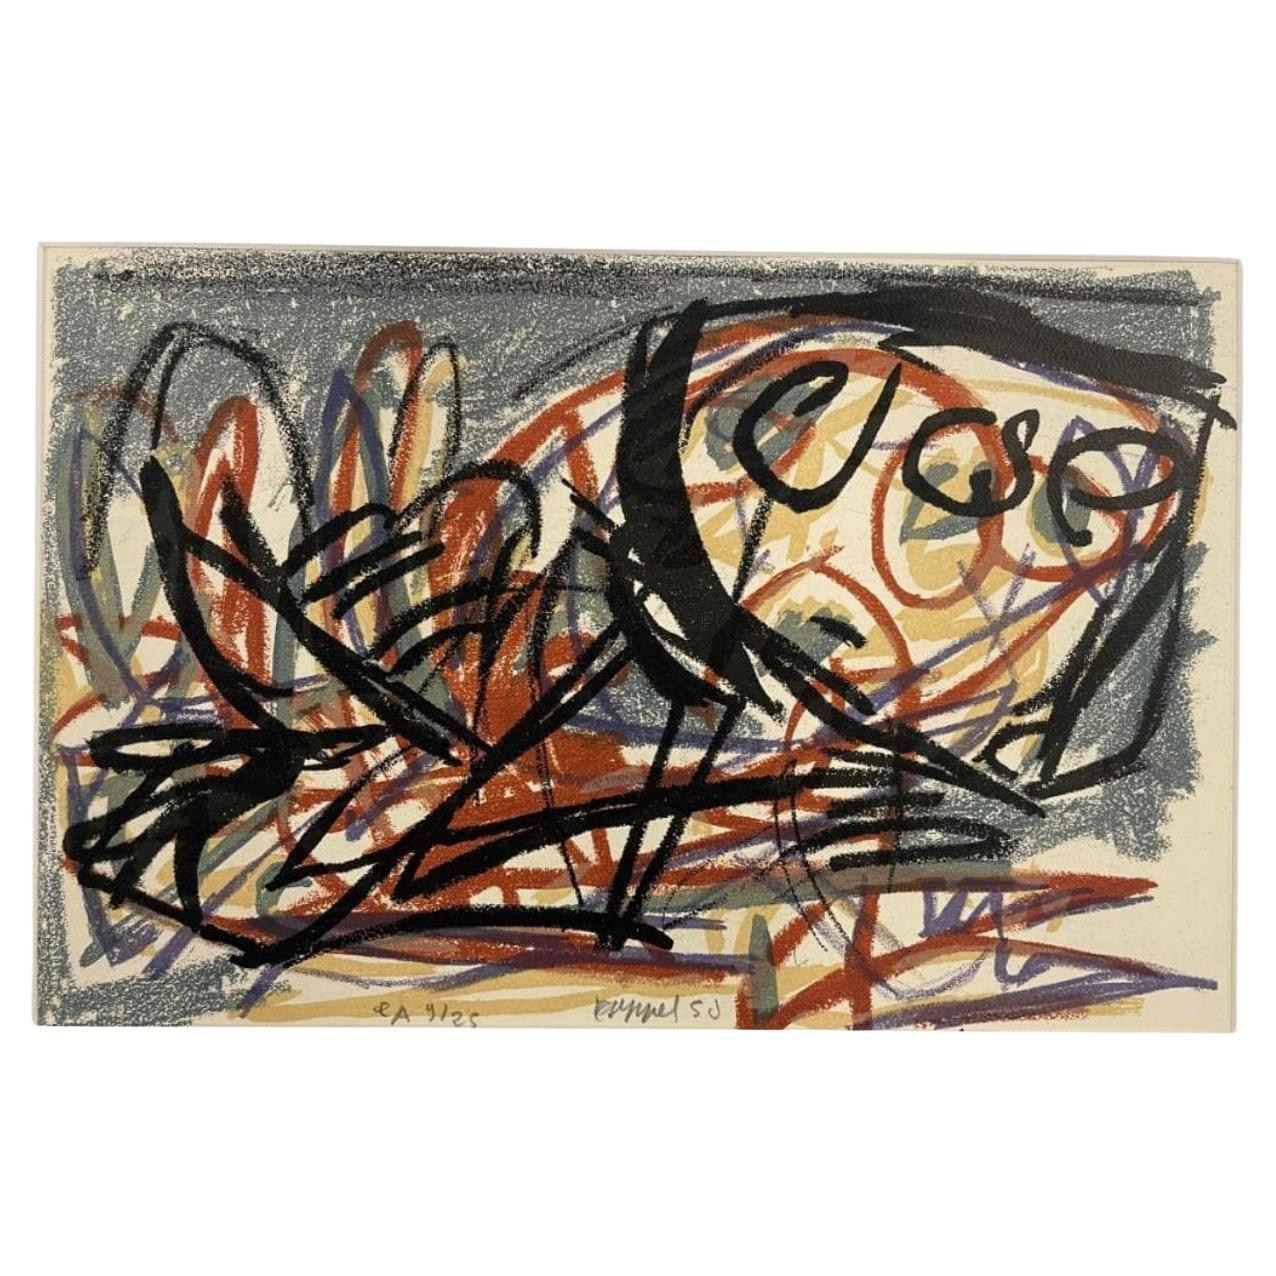 Karen Appel (Dutch, b. 1921-d. 2006) Abstract Signed E/A 1950 Lithograph. 